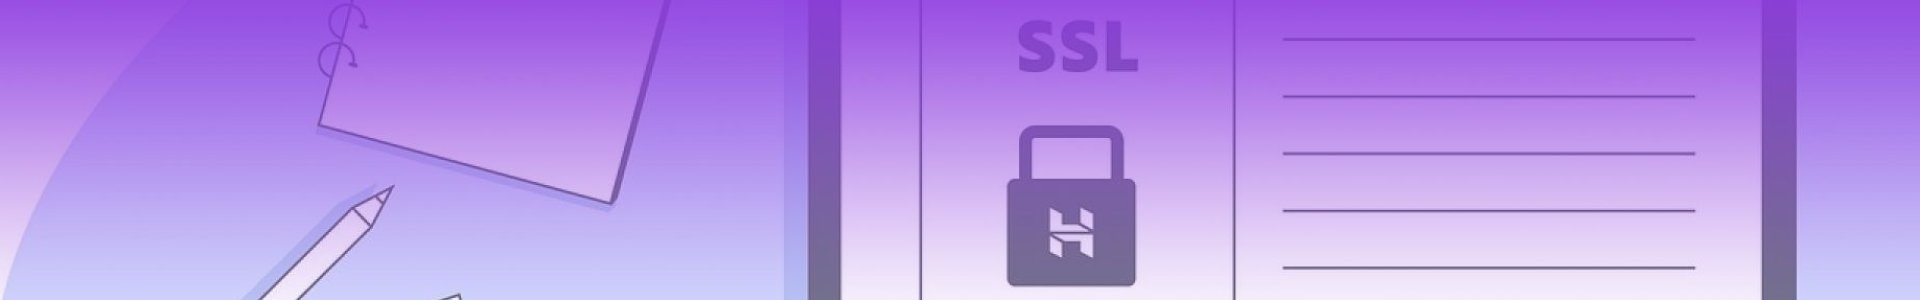 למה צריך תעודת SSL באתר אינטרט?